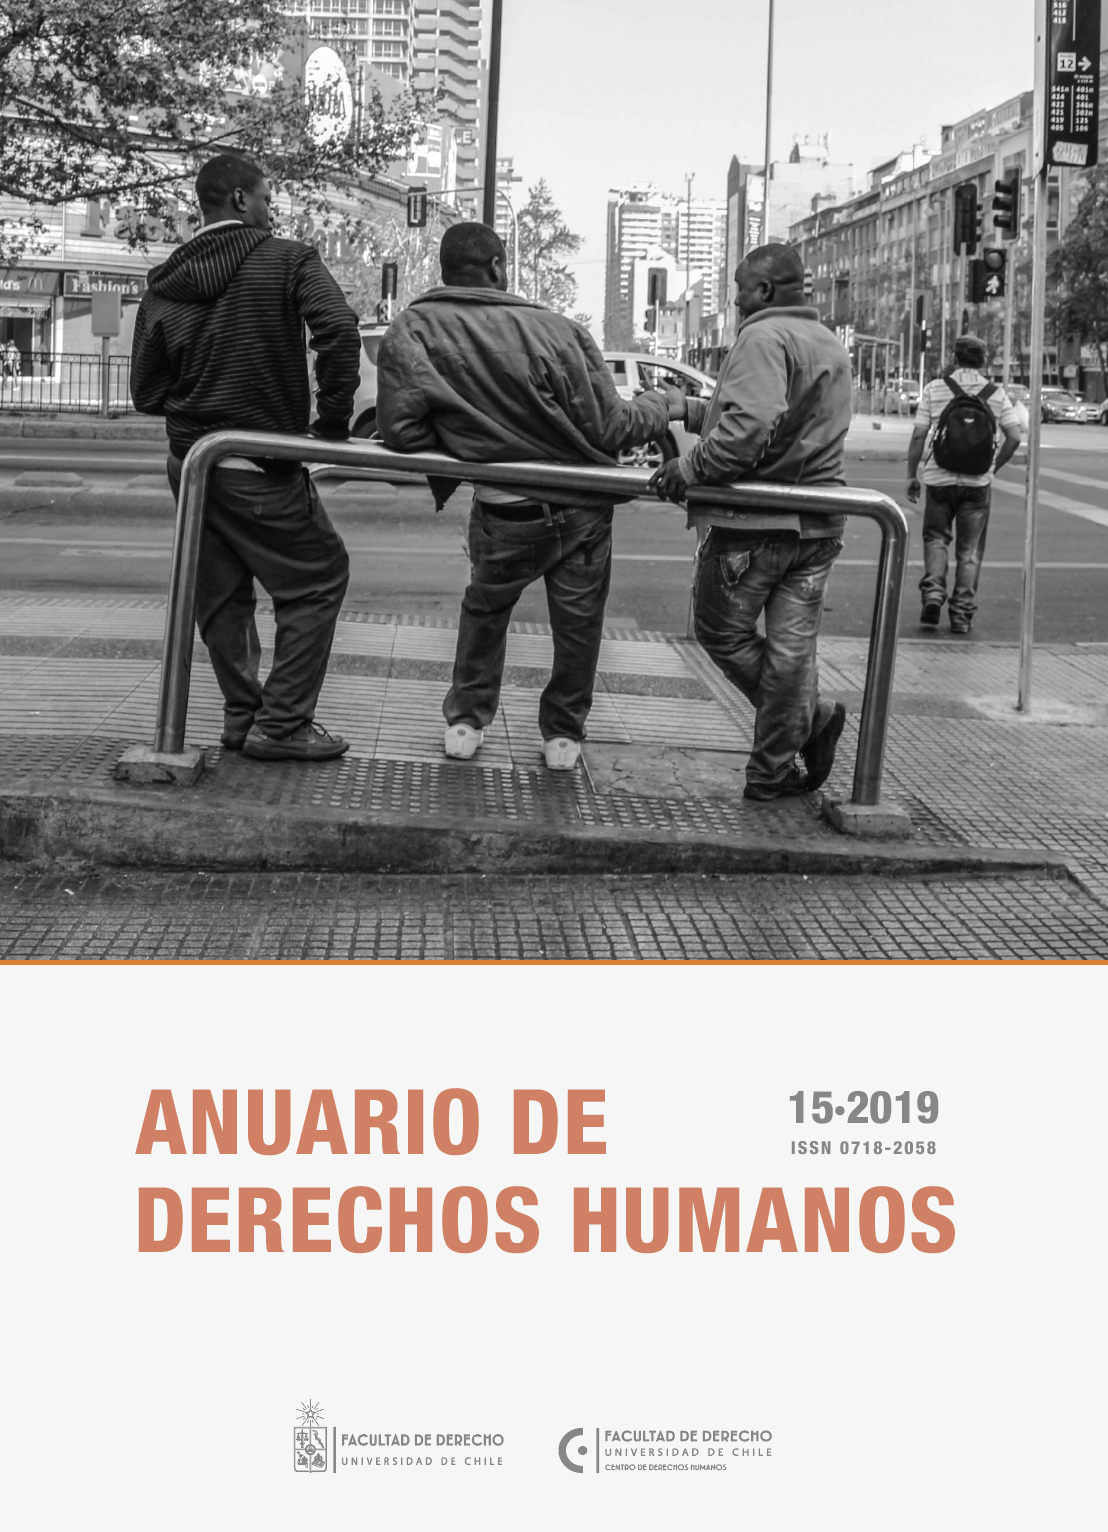 							View Vol. 15 No. 2 (2019): Anuario de Derechos Humanos 2019
						